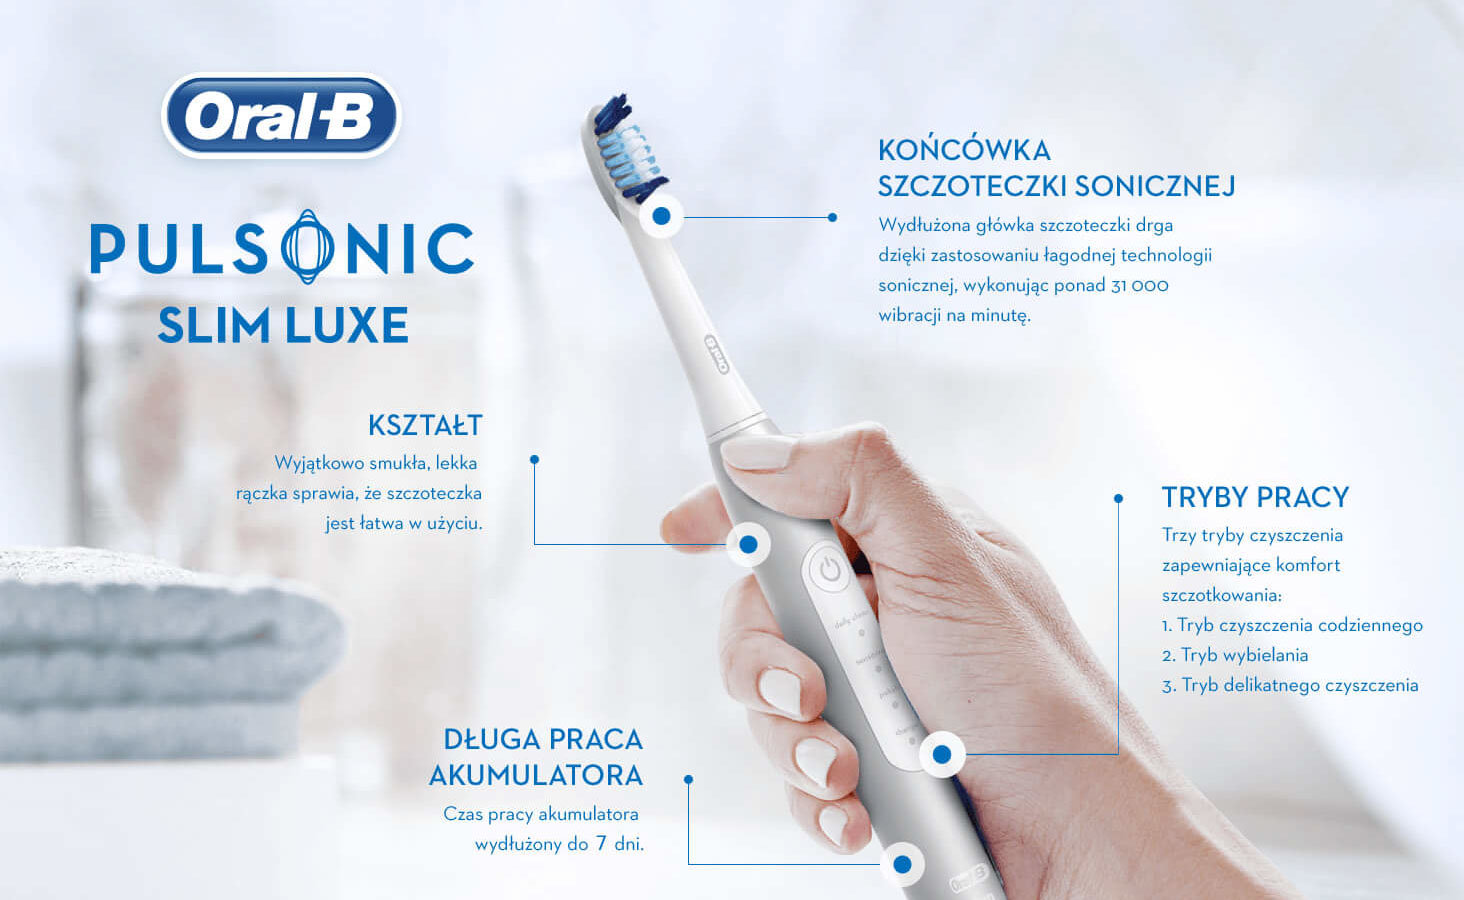 Szczoteczka OralB Pulsonic Slim Luxe 4200 White Ecom pack. 3 tryby czyszczenia.